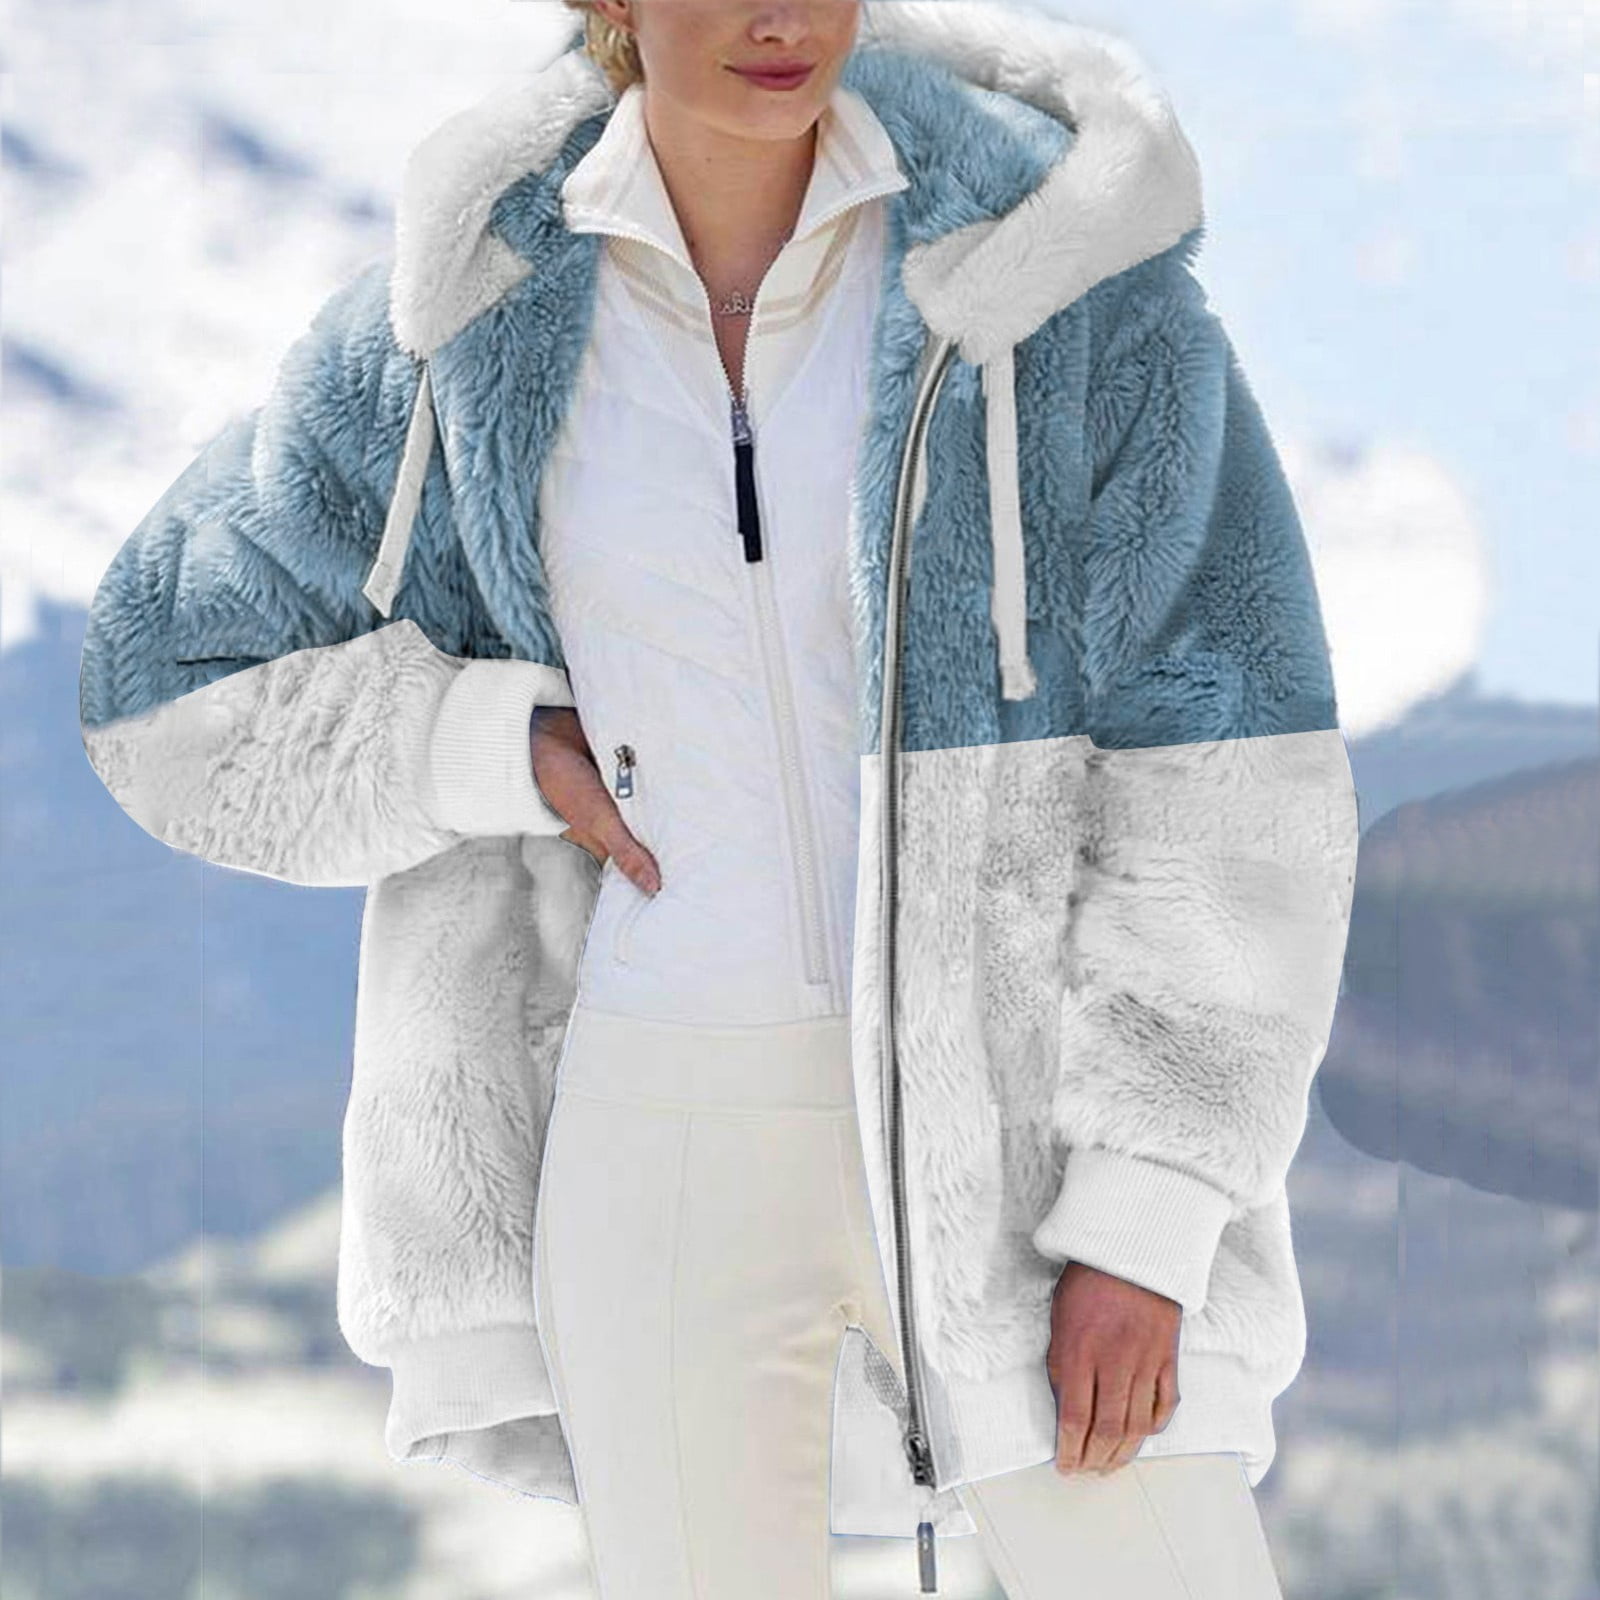 Winter Women Casual Coat Fashion Female Pockets Jackets Large Size